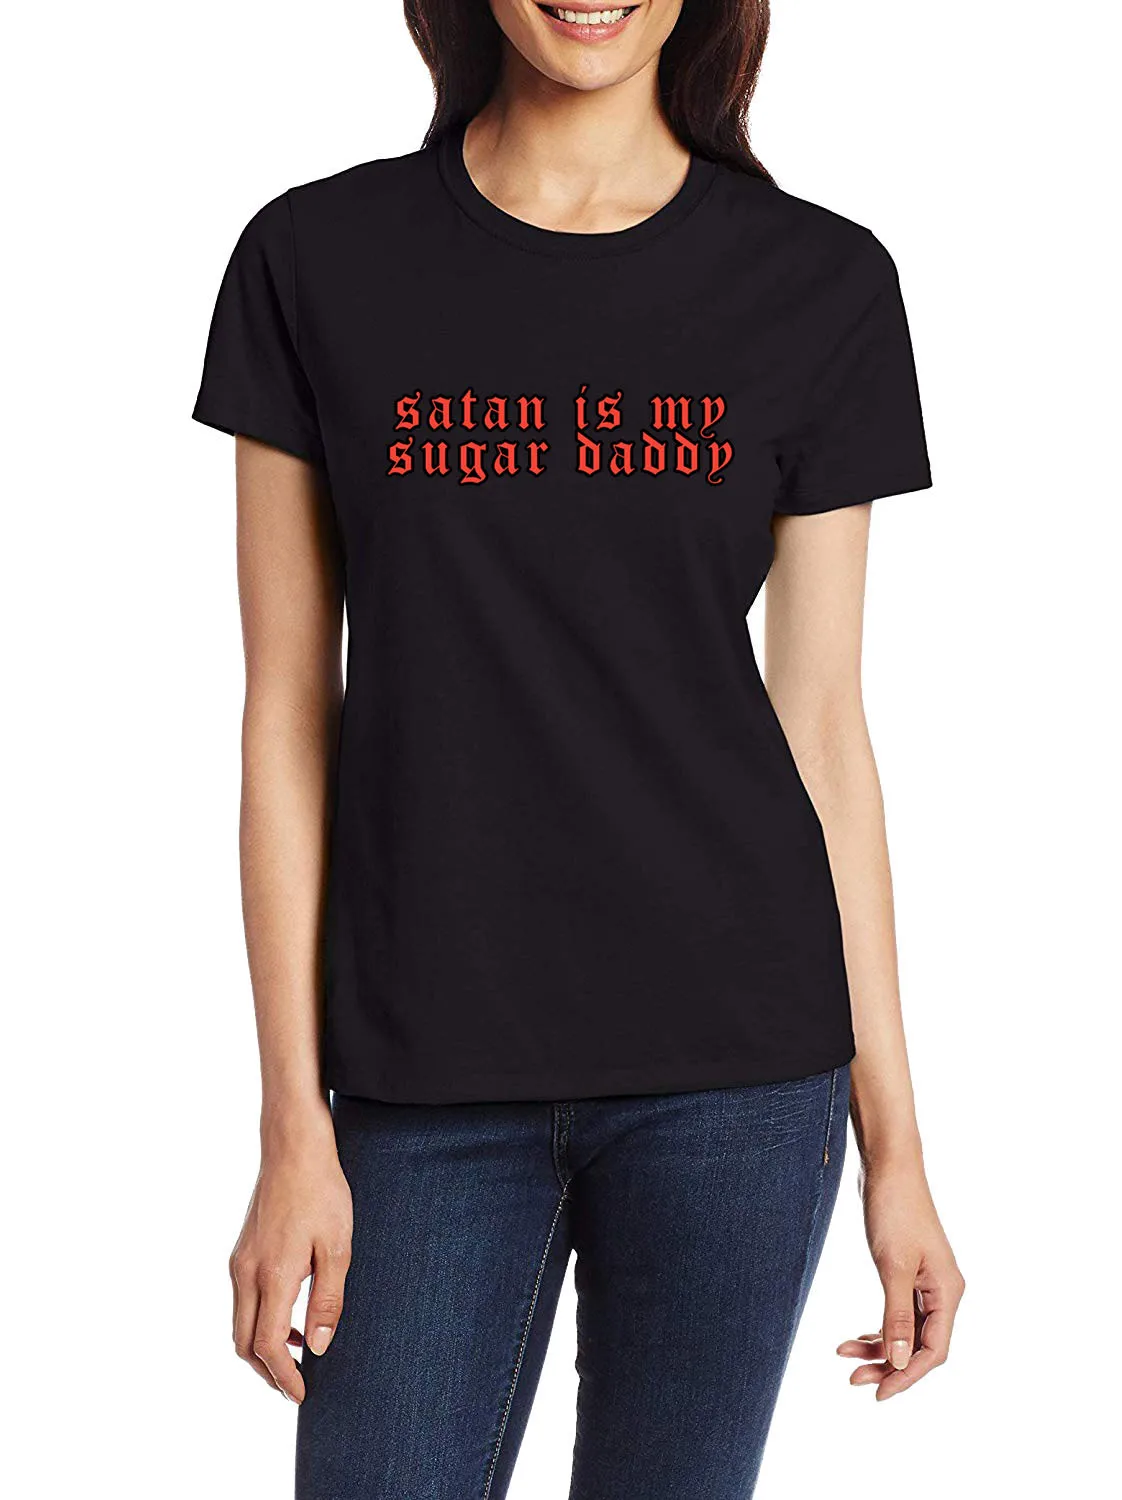 

Флиртовая женская футболка с надписью сатана мой сахар, смешная дизайнерская кокетливая футболка с юмором, женские уличные модные непослушные футболки, Настраиваемые высококачественные Топы